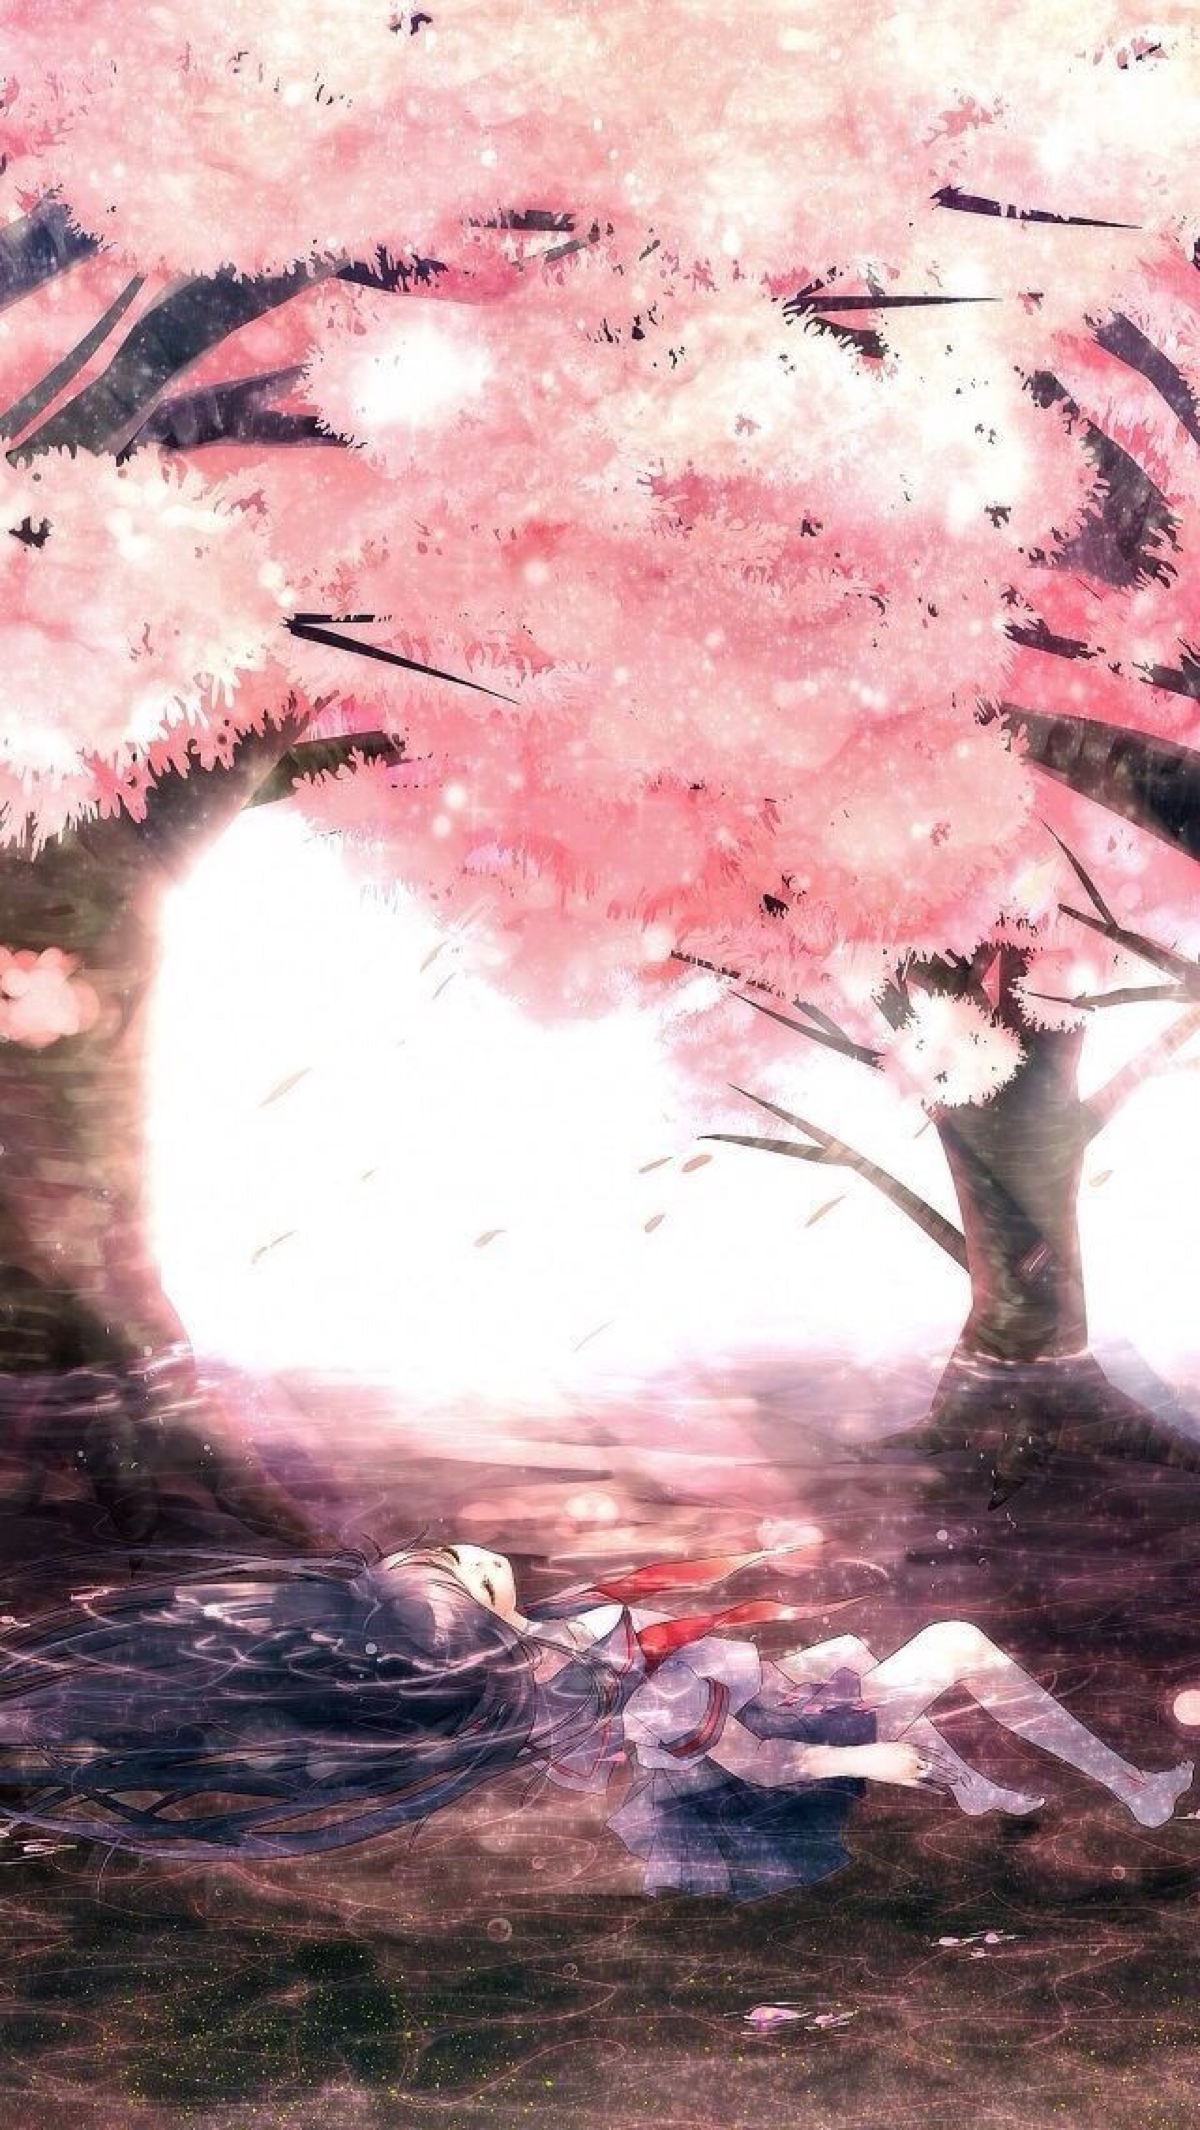 樱花树下的女孩